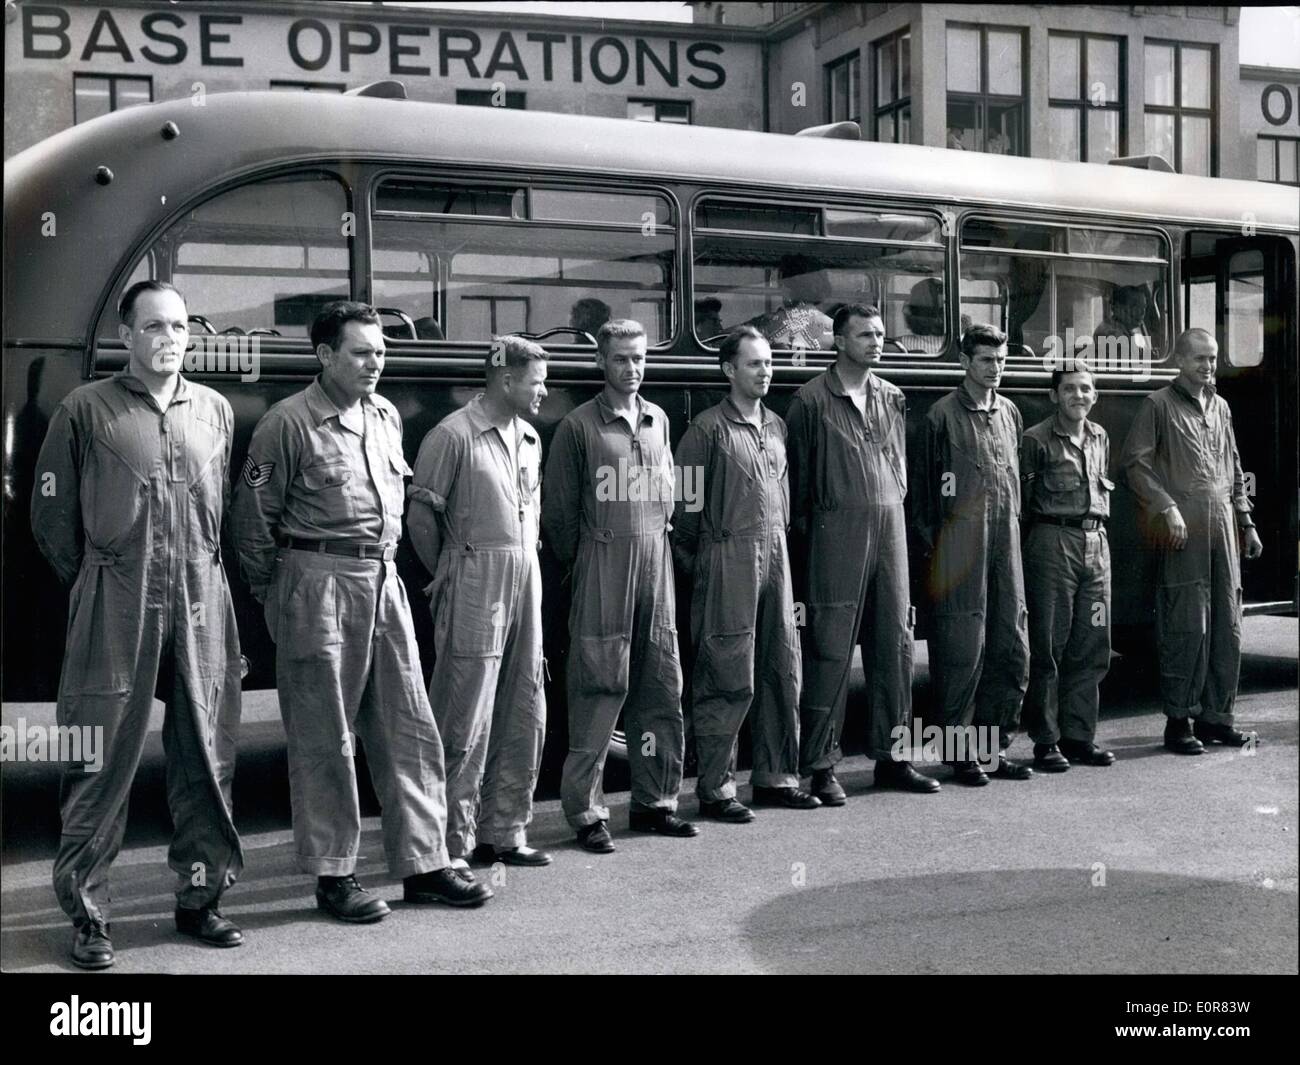 Juillet 07, 1958 - Sortie US pilotes à Wiesbaden : Les neuf pilotes américains, qui avait été forcé d'atterrir en Arménie par les avions russes, 17 Juillet 58, après avoir été libéré, aujourd'hui ont été d'arriver à l'aéroport militaire américain Wiesbaden-Erbenheim. Photo montre le pilotes, qui sont revenus. De gauche à droite : le colonel D.D. Brannon (Brannon) ; Sgt. J.C. Holman (Holman) ; le Maj L.W. Lyles (Lyles) ; le Maj Re. (Crans Crans) ; le lieutenantJ.N. Luther (Luther) ; le maj B.A. Shupe (Shupe) ; Capitaine J.T. Kane (Kane) ; pilote E.H. Alésoir alésoir (pilote) et par nuit. Sabo (Sabo) Banque D'Images